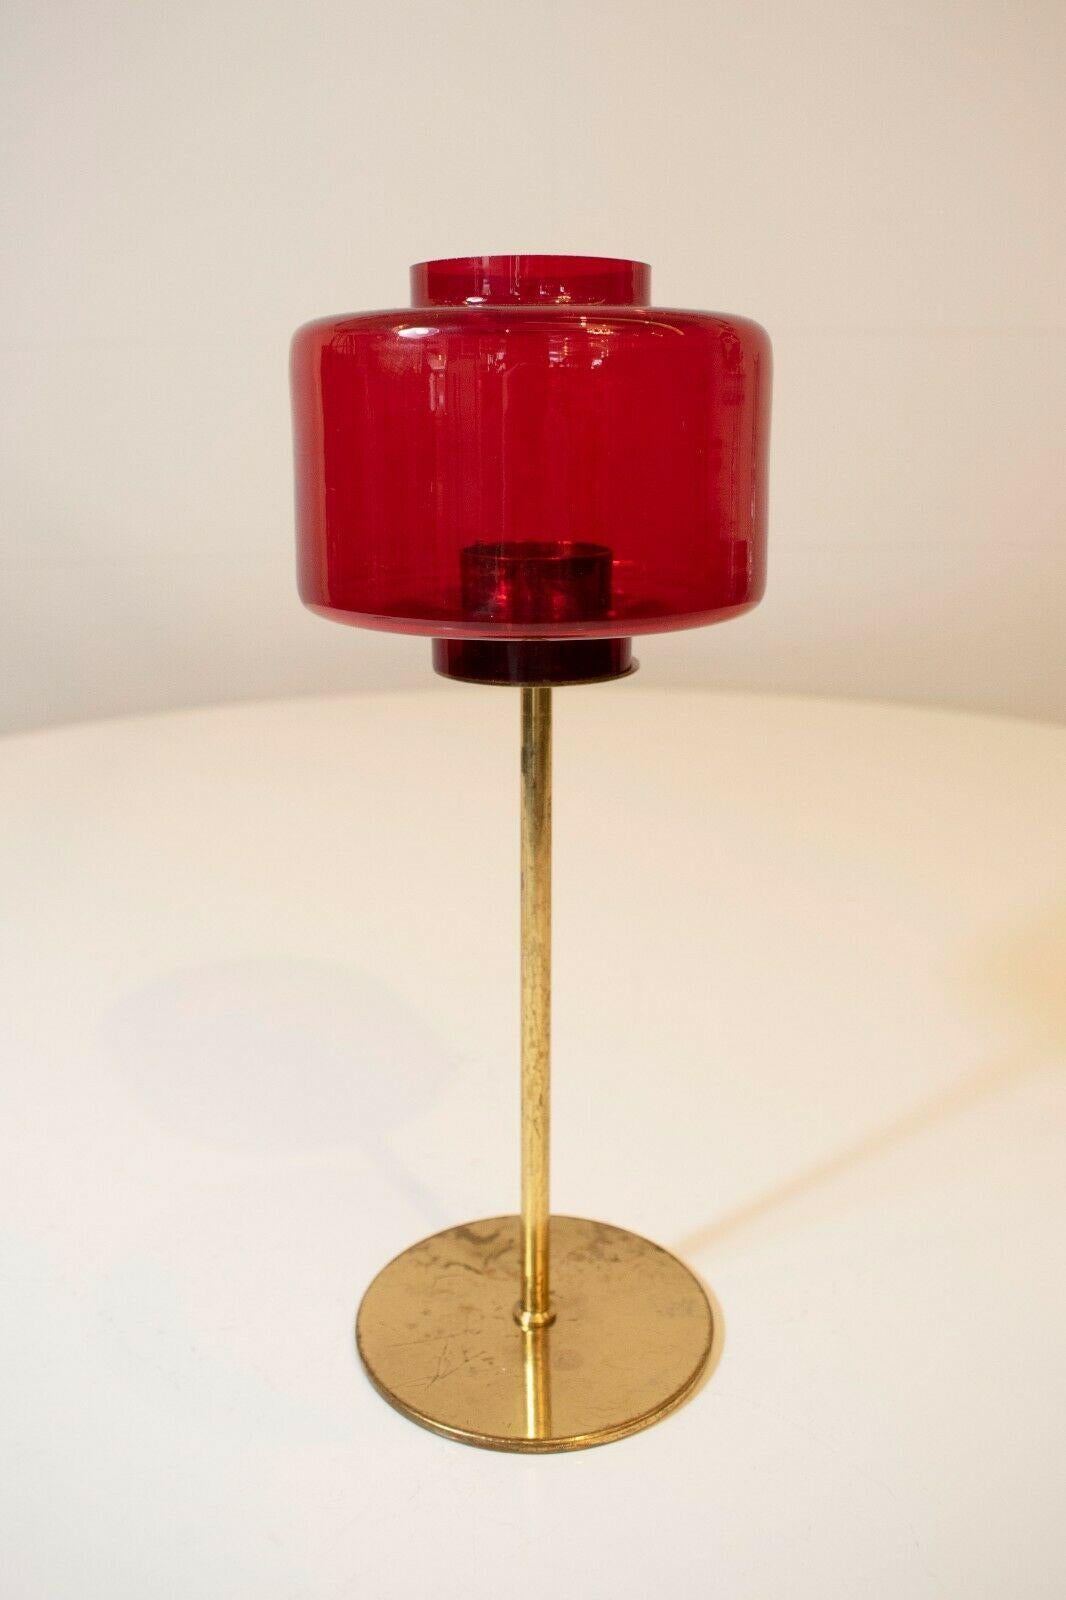 Dieser seltene und sammelbare Kerzenständer wurde in den 1960er Jahren in Schweden hergestellt und von Hans-agne Jakobsson entworfen. 

Die quadratische rote Platte steht auf einem eleganten Messingsockel und weist eine originelle und authentische